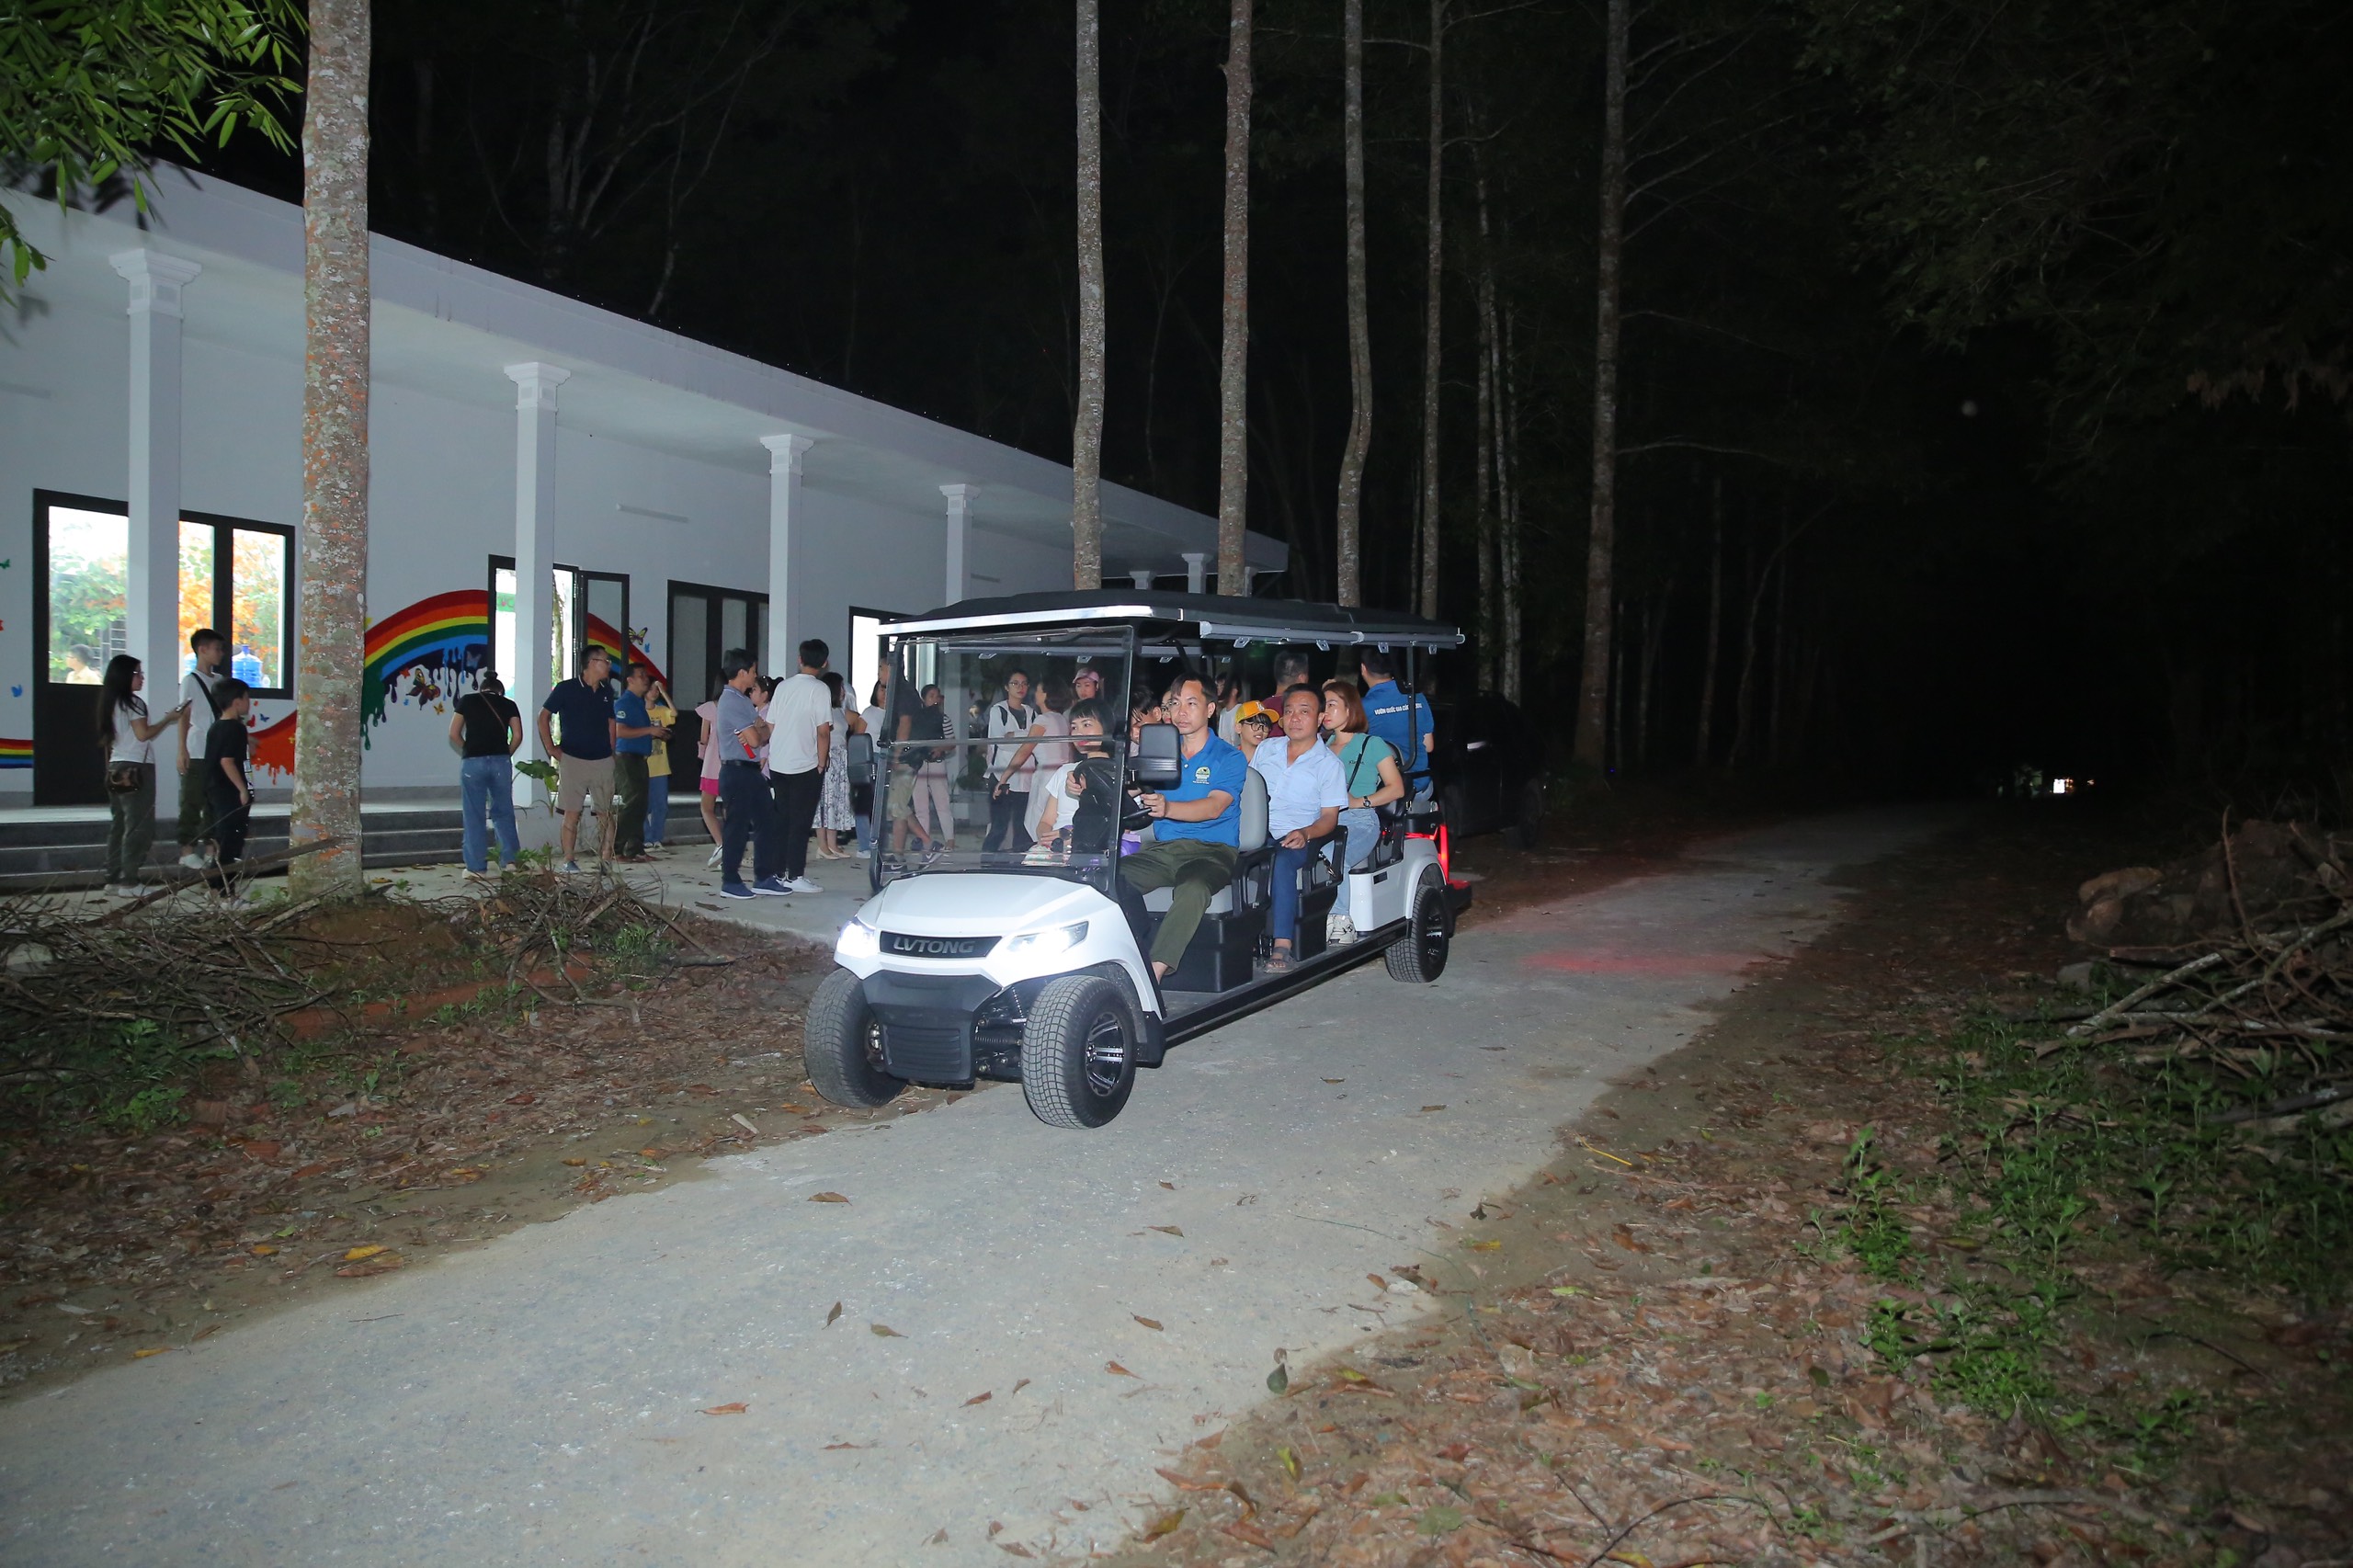 Tour tham quan bằng xe điện xem đom đóm và động vật hoang dã ban đêm tại Vườn quốc gia Cúc Phương. Ảnh: VQG Cúc Phương